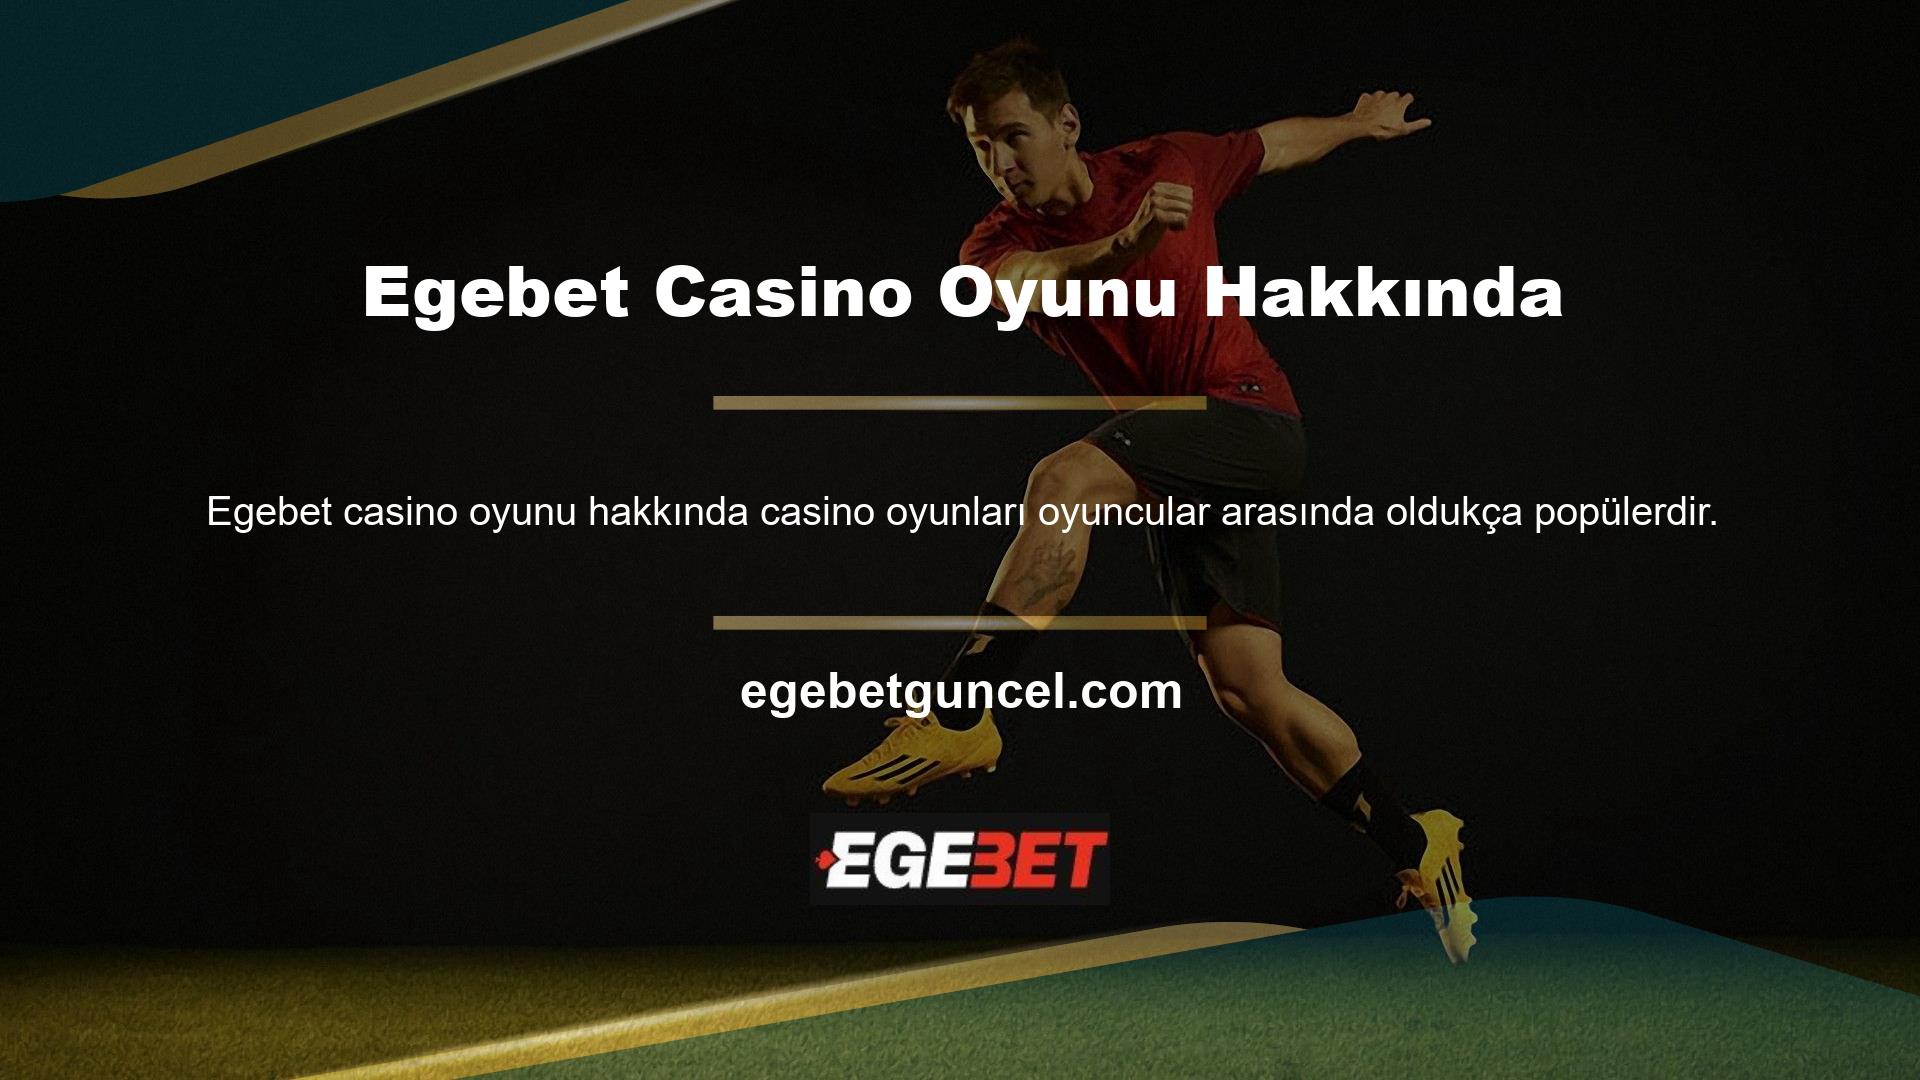 Casino adı altında birçok oyunu bünyesinde barındıran Egebet gibi oyun sektörünün lider markasıdır